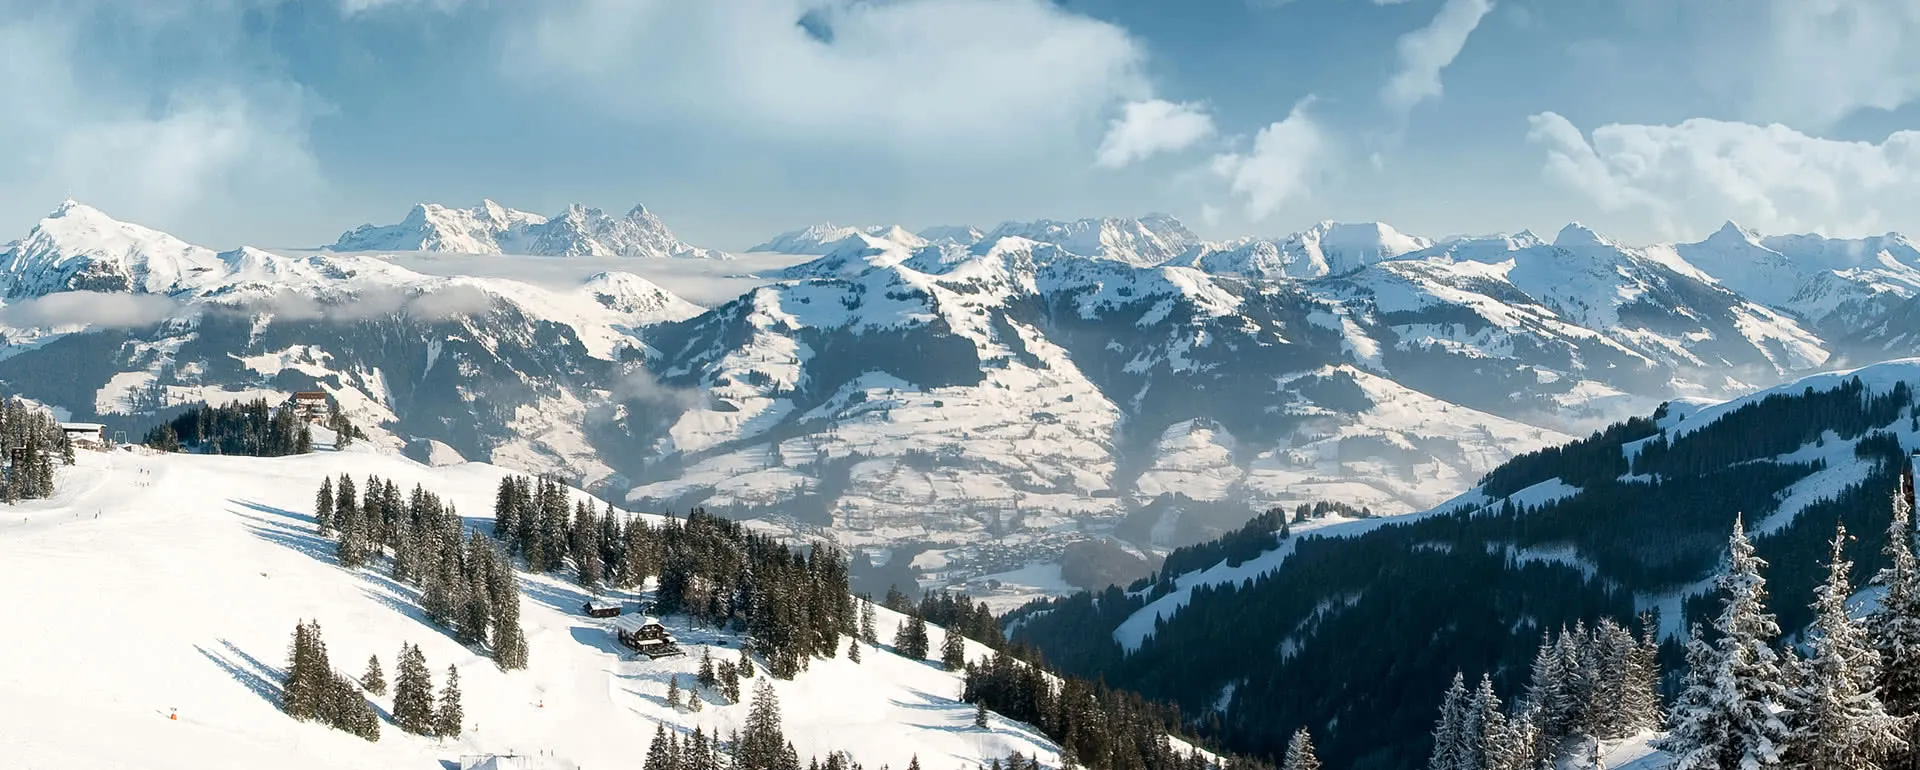 Kirchberg in Tirol - the destination for school trips